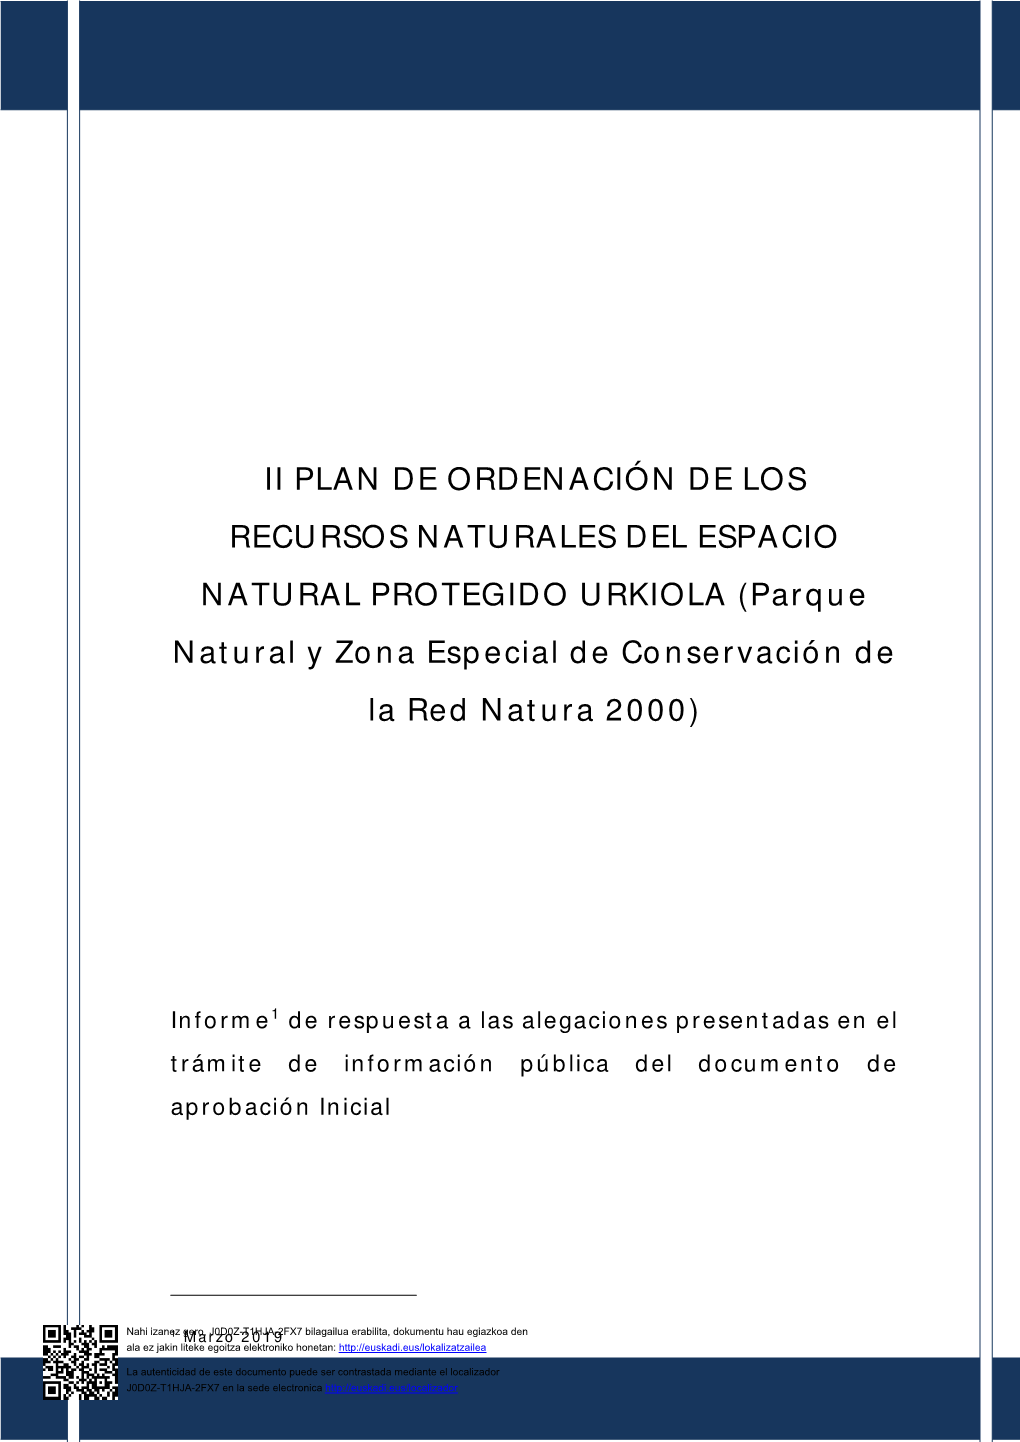 II PLAN DE ORDENACIÓN DE LOS RECURSOS NATURALES DEL ESPACIO NATURAL PROTEGIDO URKIOLA (Parque Natural Y Zona Especial De Conservación De La Red Natura 2000)